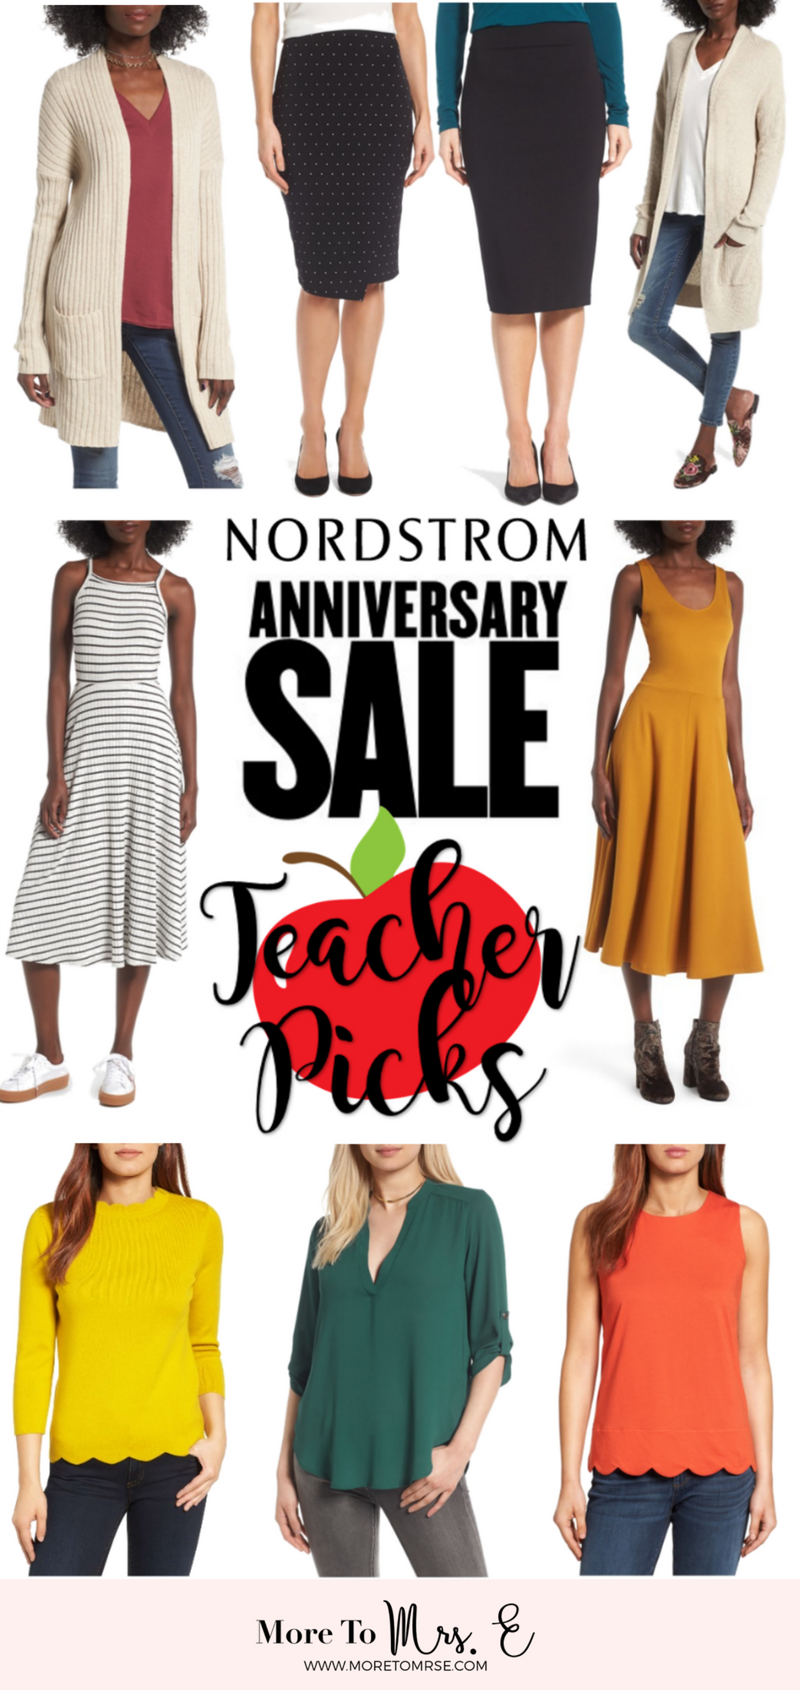 Nordstrom Anniversary Sale Picks for Teachers